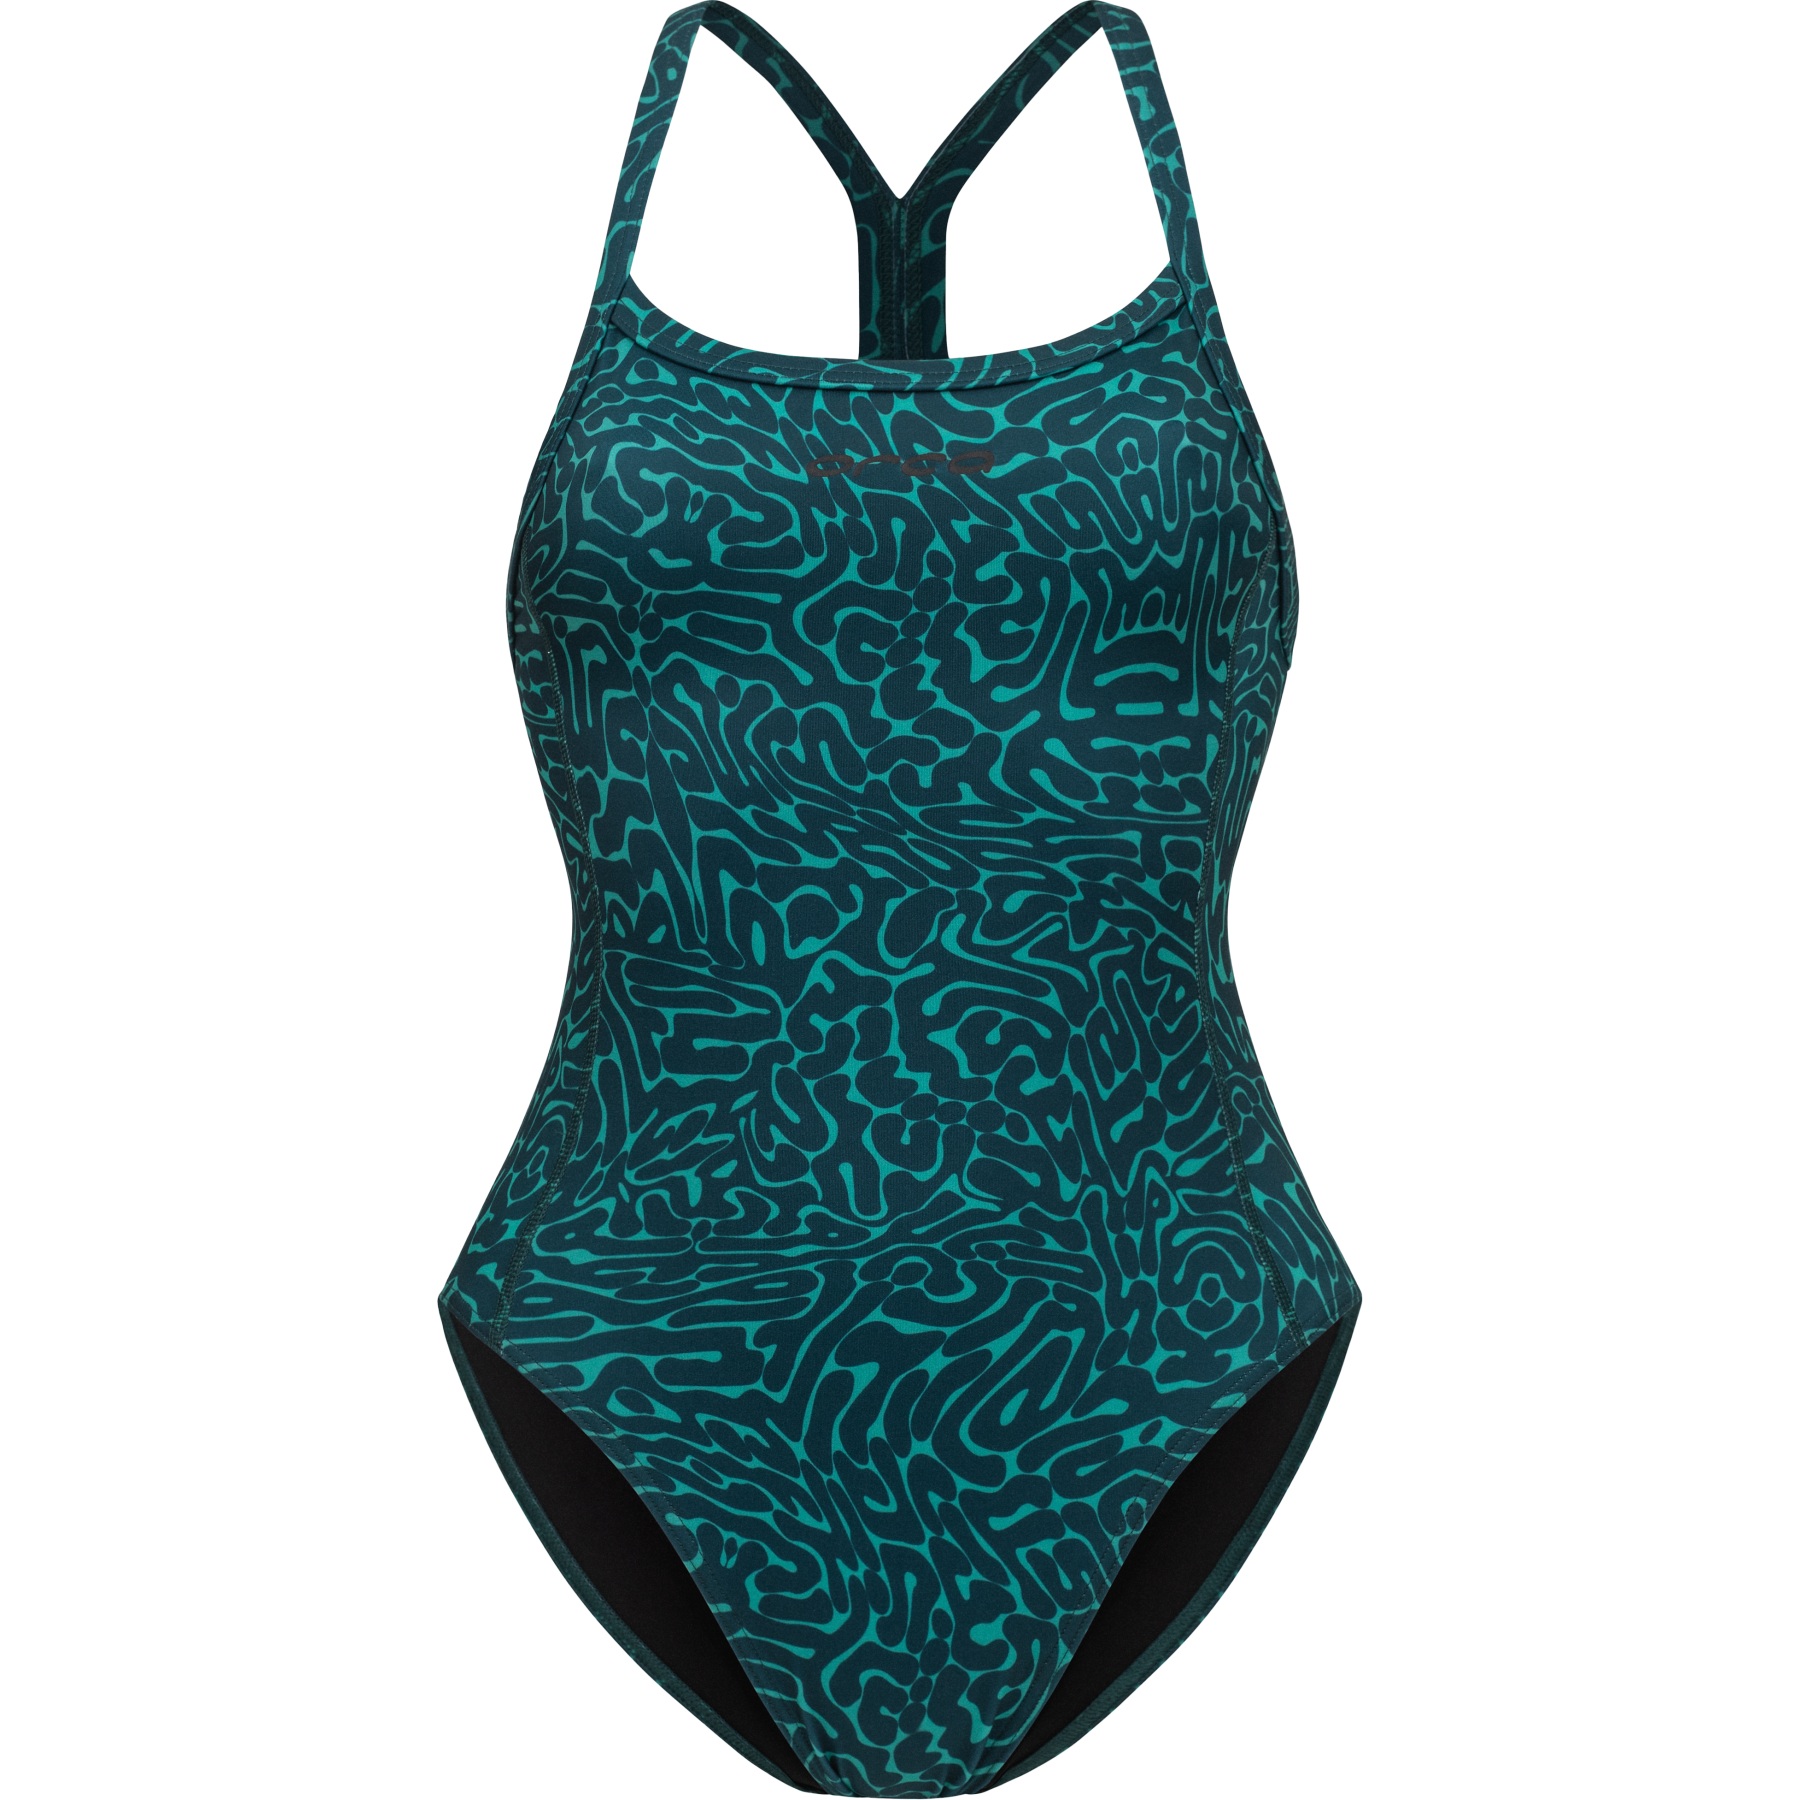 Produktbild von Orca Core Einteiler Thin Strap Badeanzug Damen - green diploria